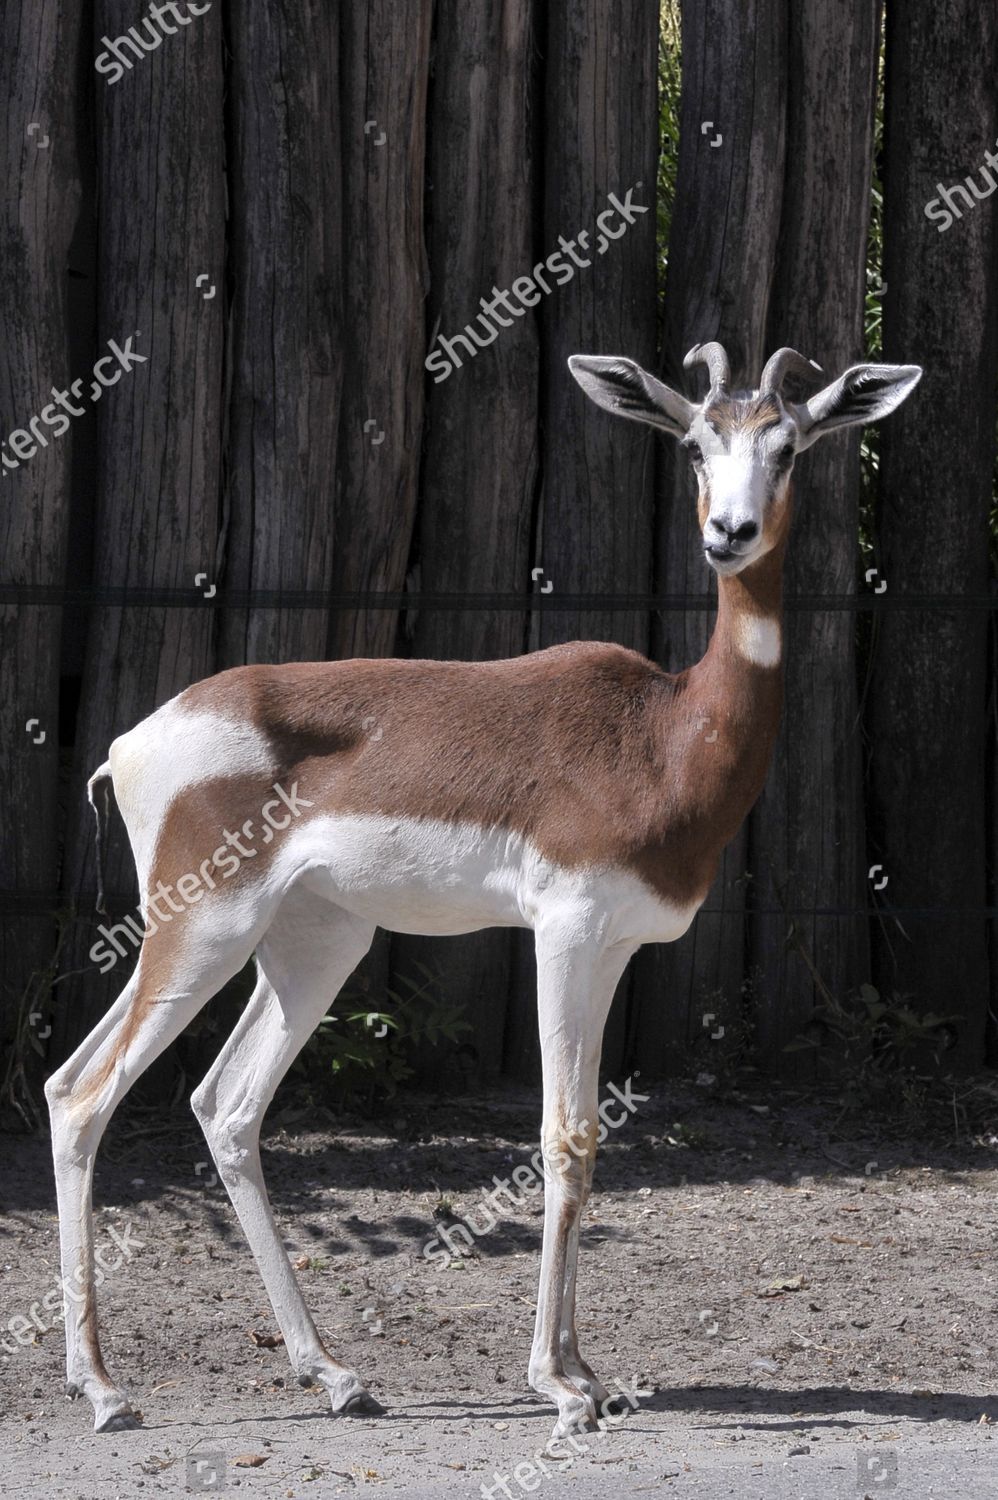 Mhorr gazelle named Evita stands her 